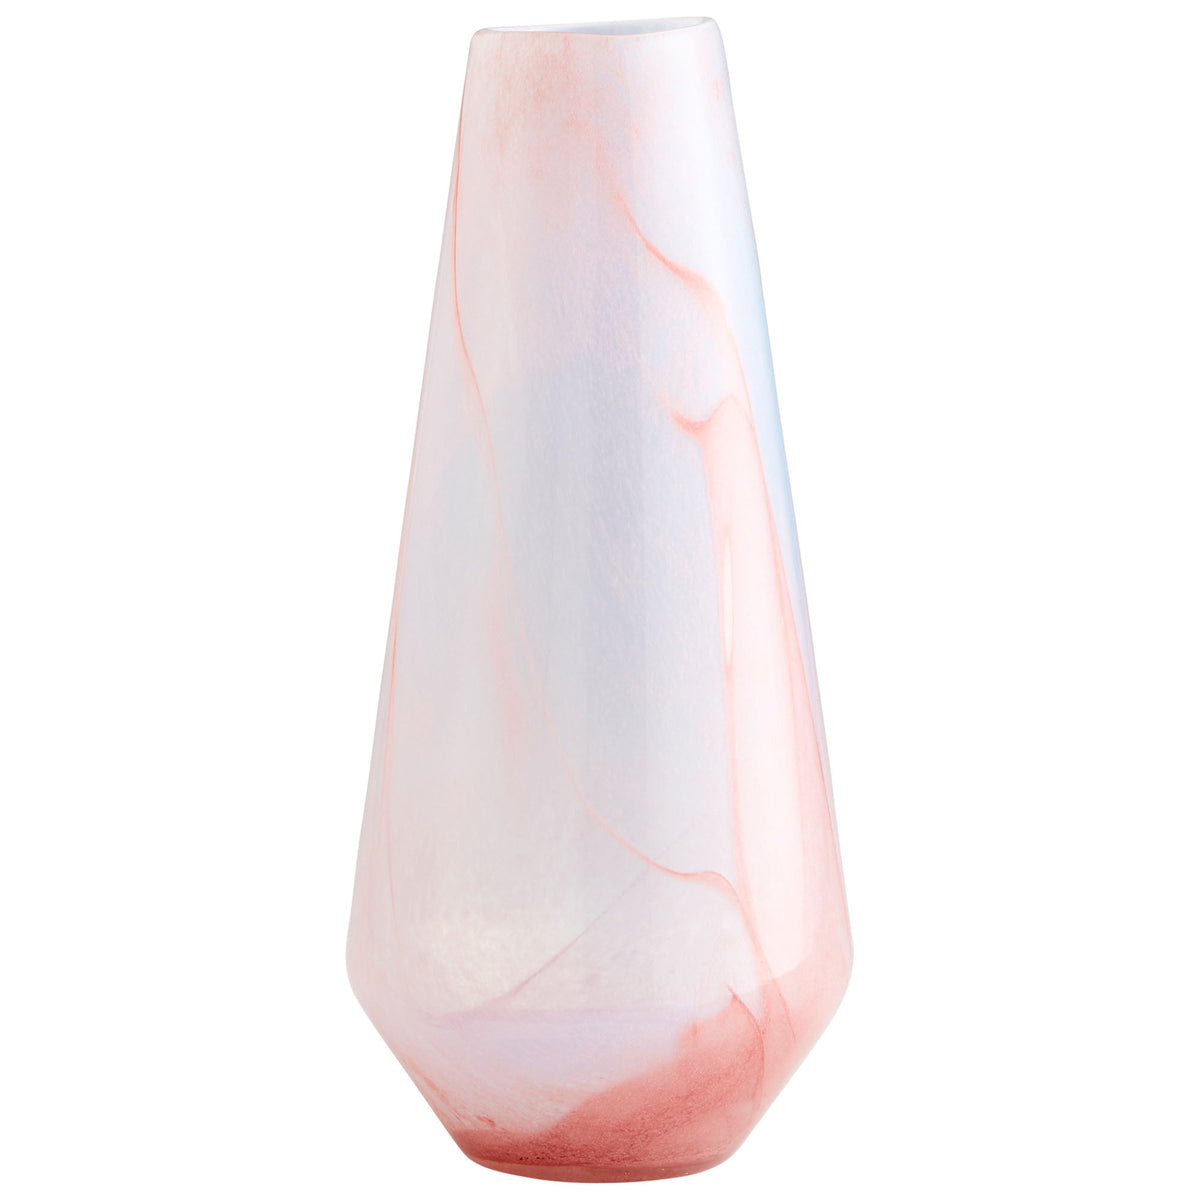 Atria Vase | Pink - Large by Cyan